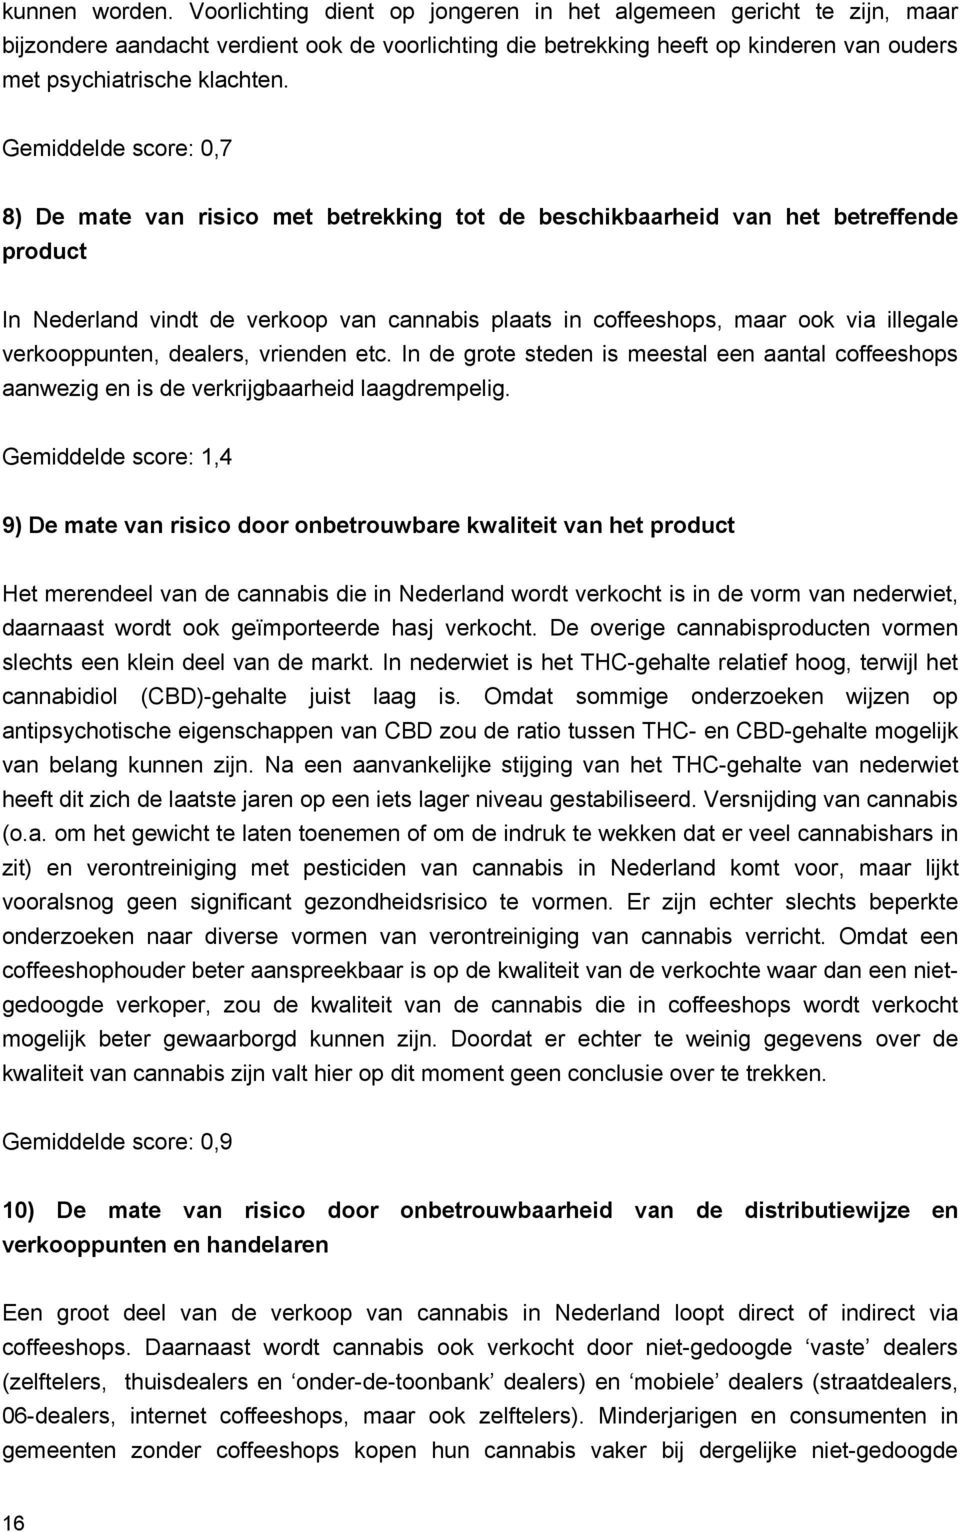 Gemiddelde score: 0,7 8) De mate van risico met betrekking tot de beschikbaarheid van het betreffende product In Nederland vindt de verkoop van cannabis plaats in coffeeshops, maar ook via illegale